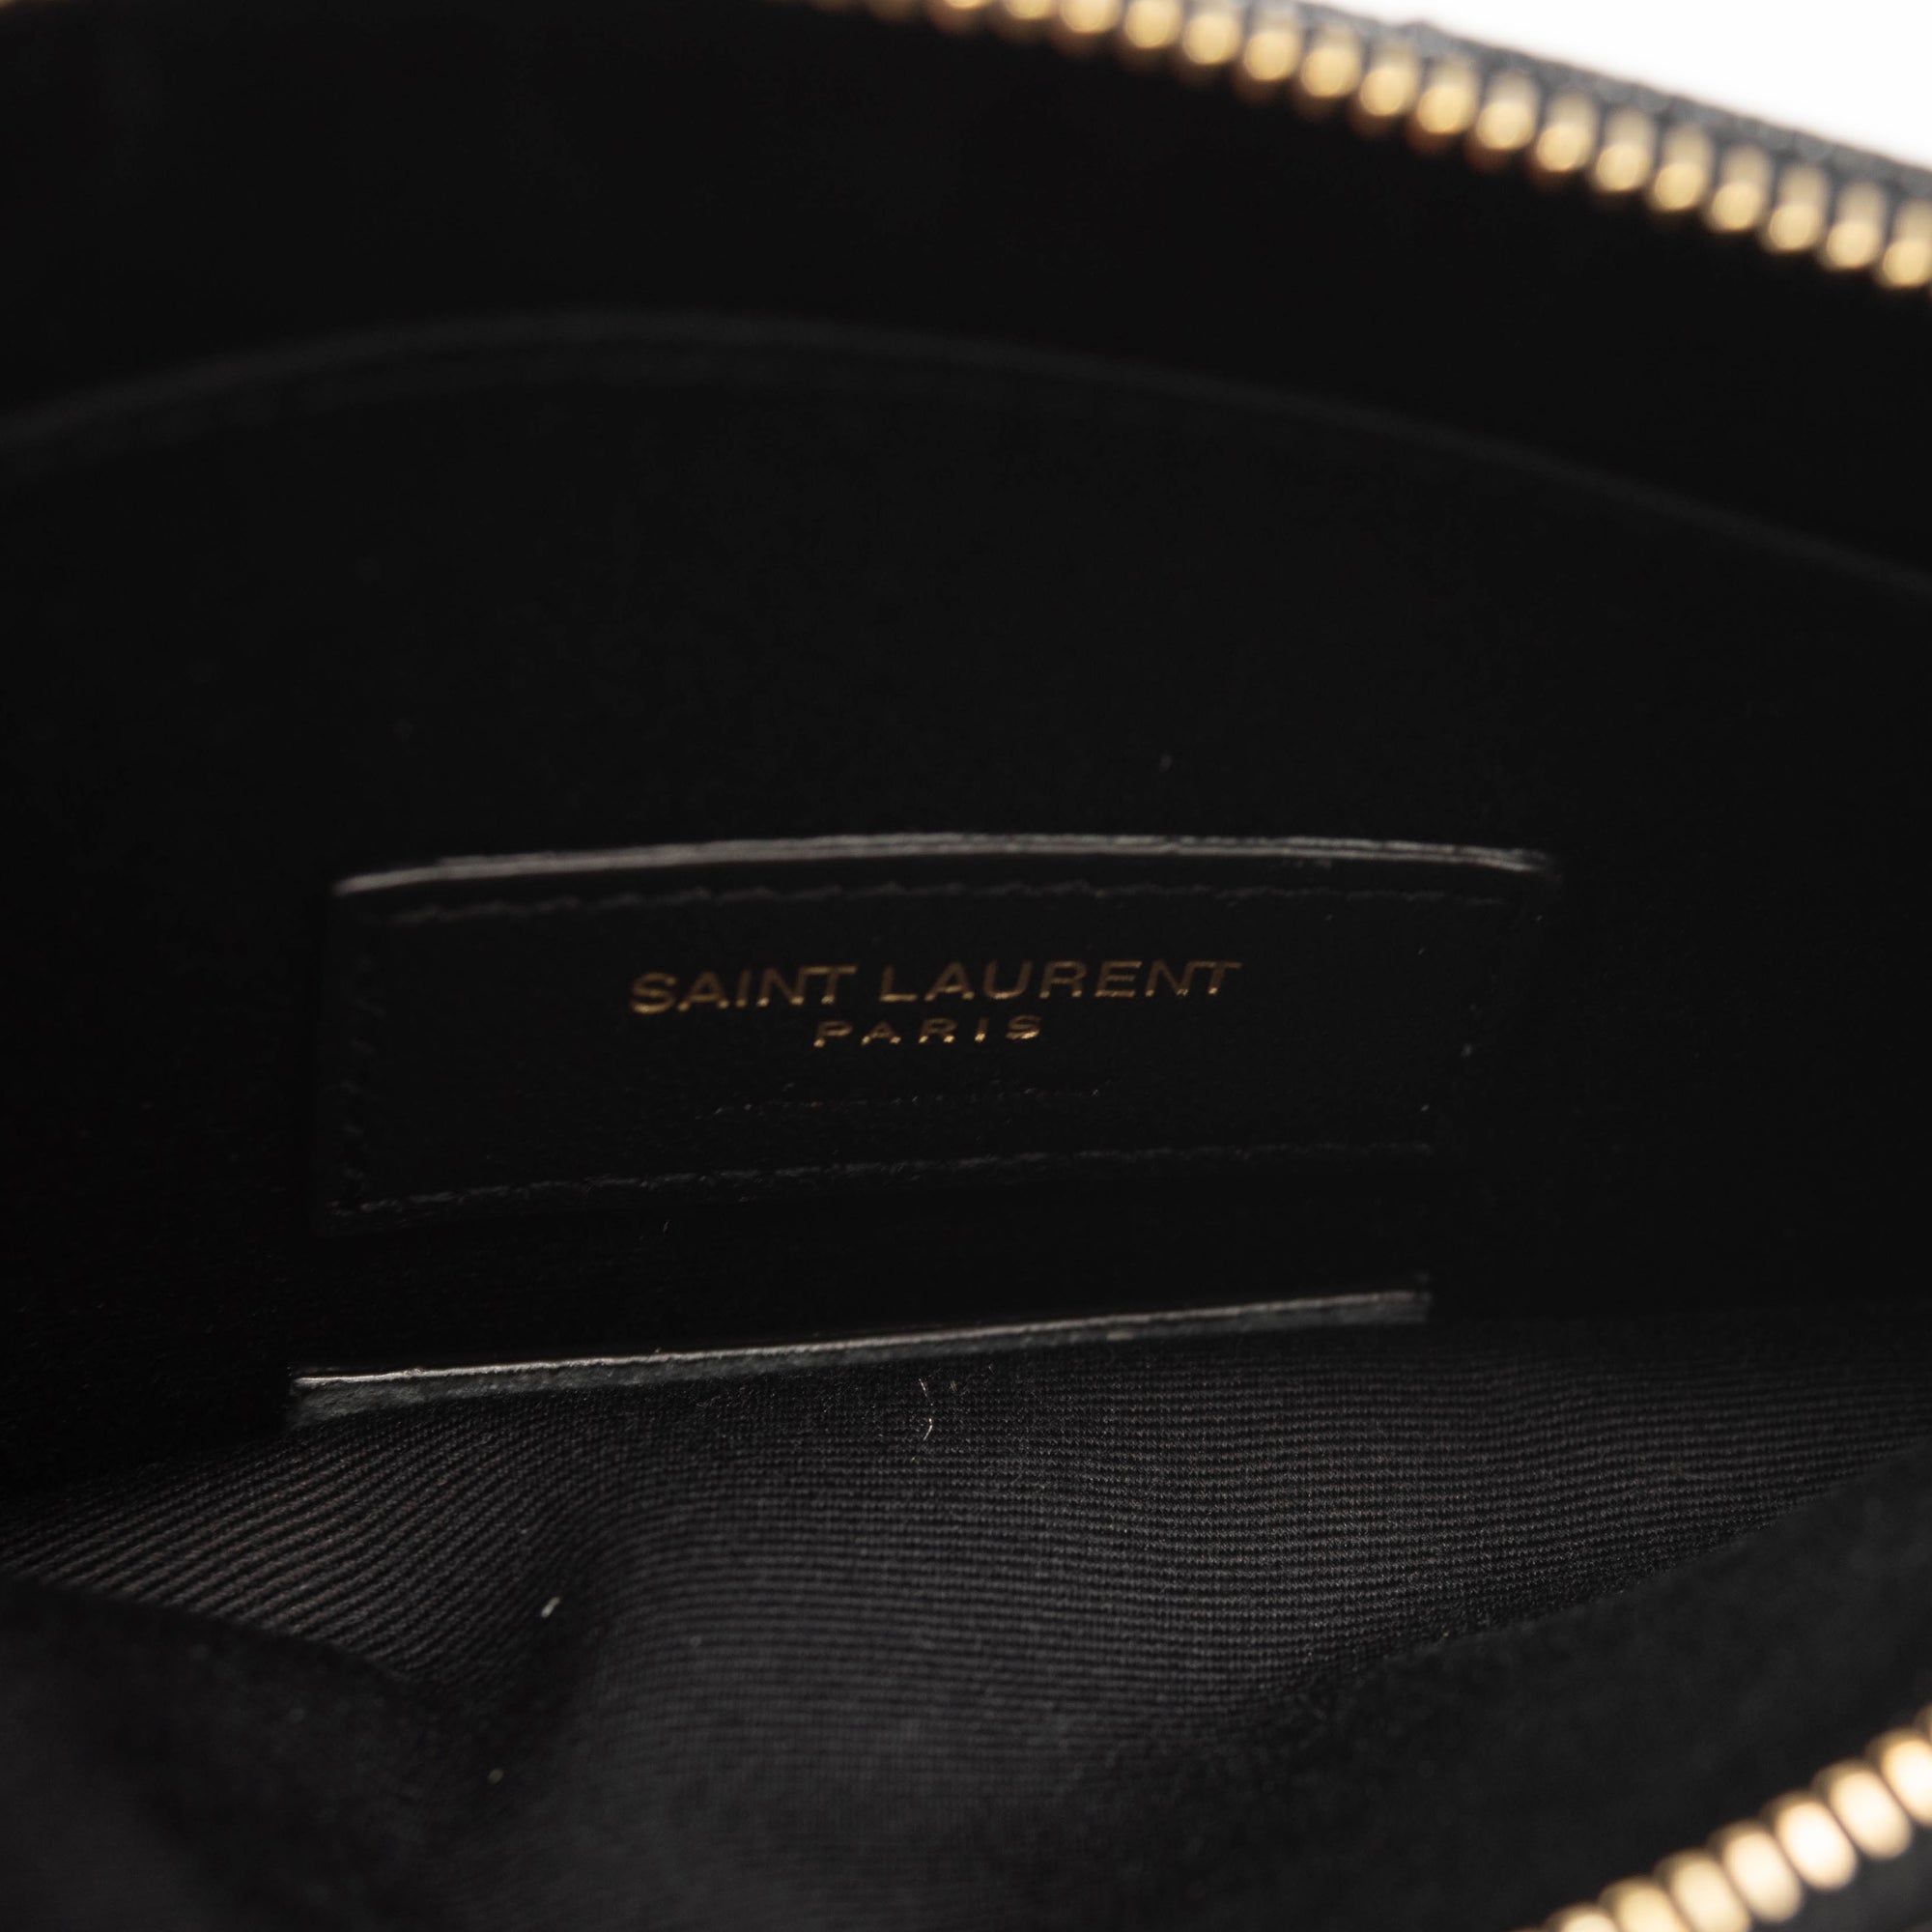 Saint Laurent large zip bill pouch wristlet clutch